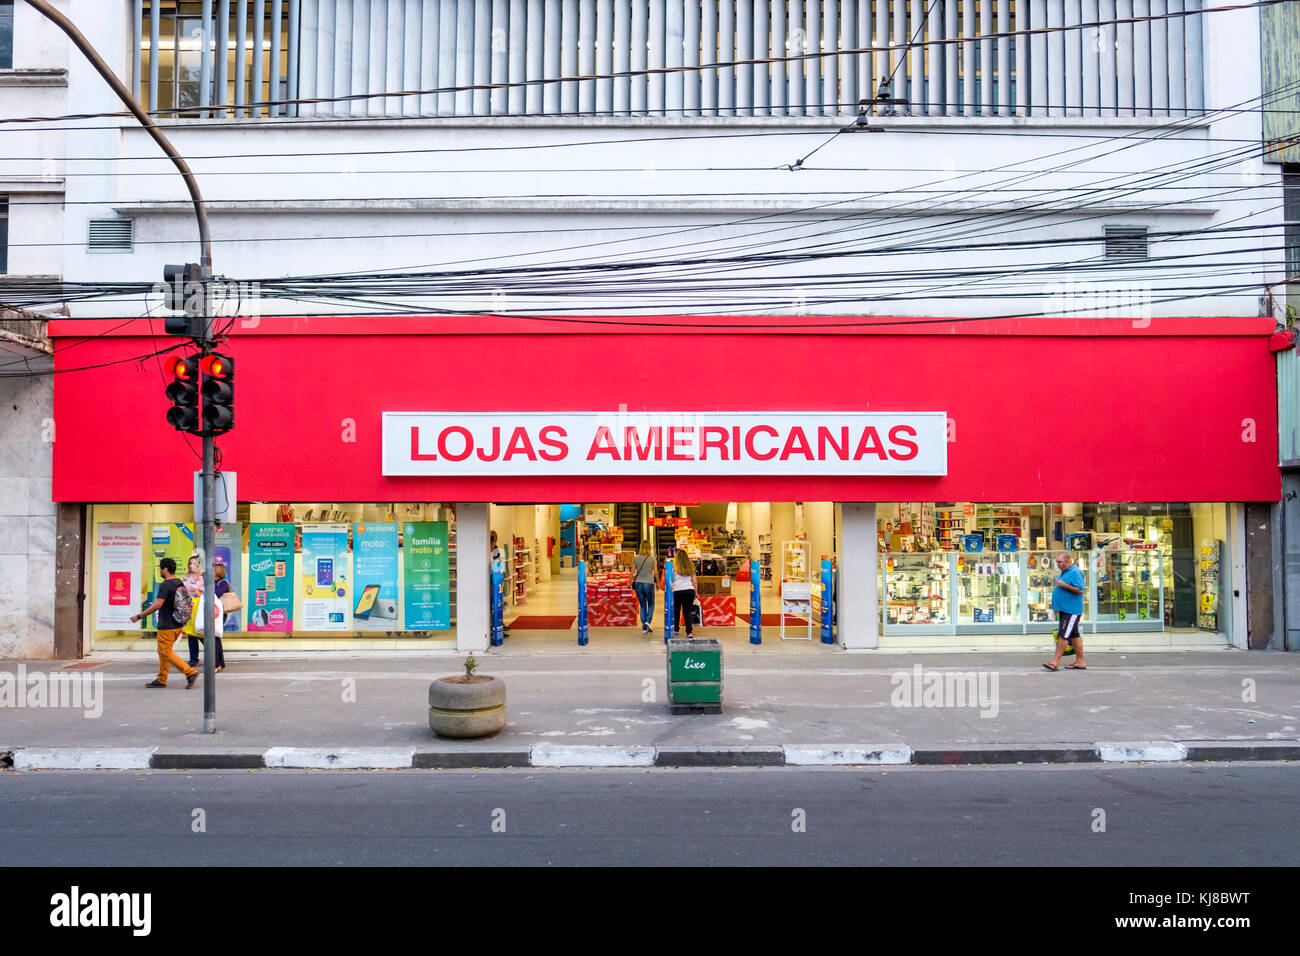 Lojas Americanas S.A., Blick von Außen, Fußgänger, der Verbraucher, der Brasilianischen Einzelhandelskette store Fassade mit Markennamen, Beschilderung, Santos, Sao Paulo, Brasilien. Stockfoto